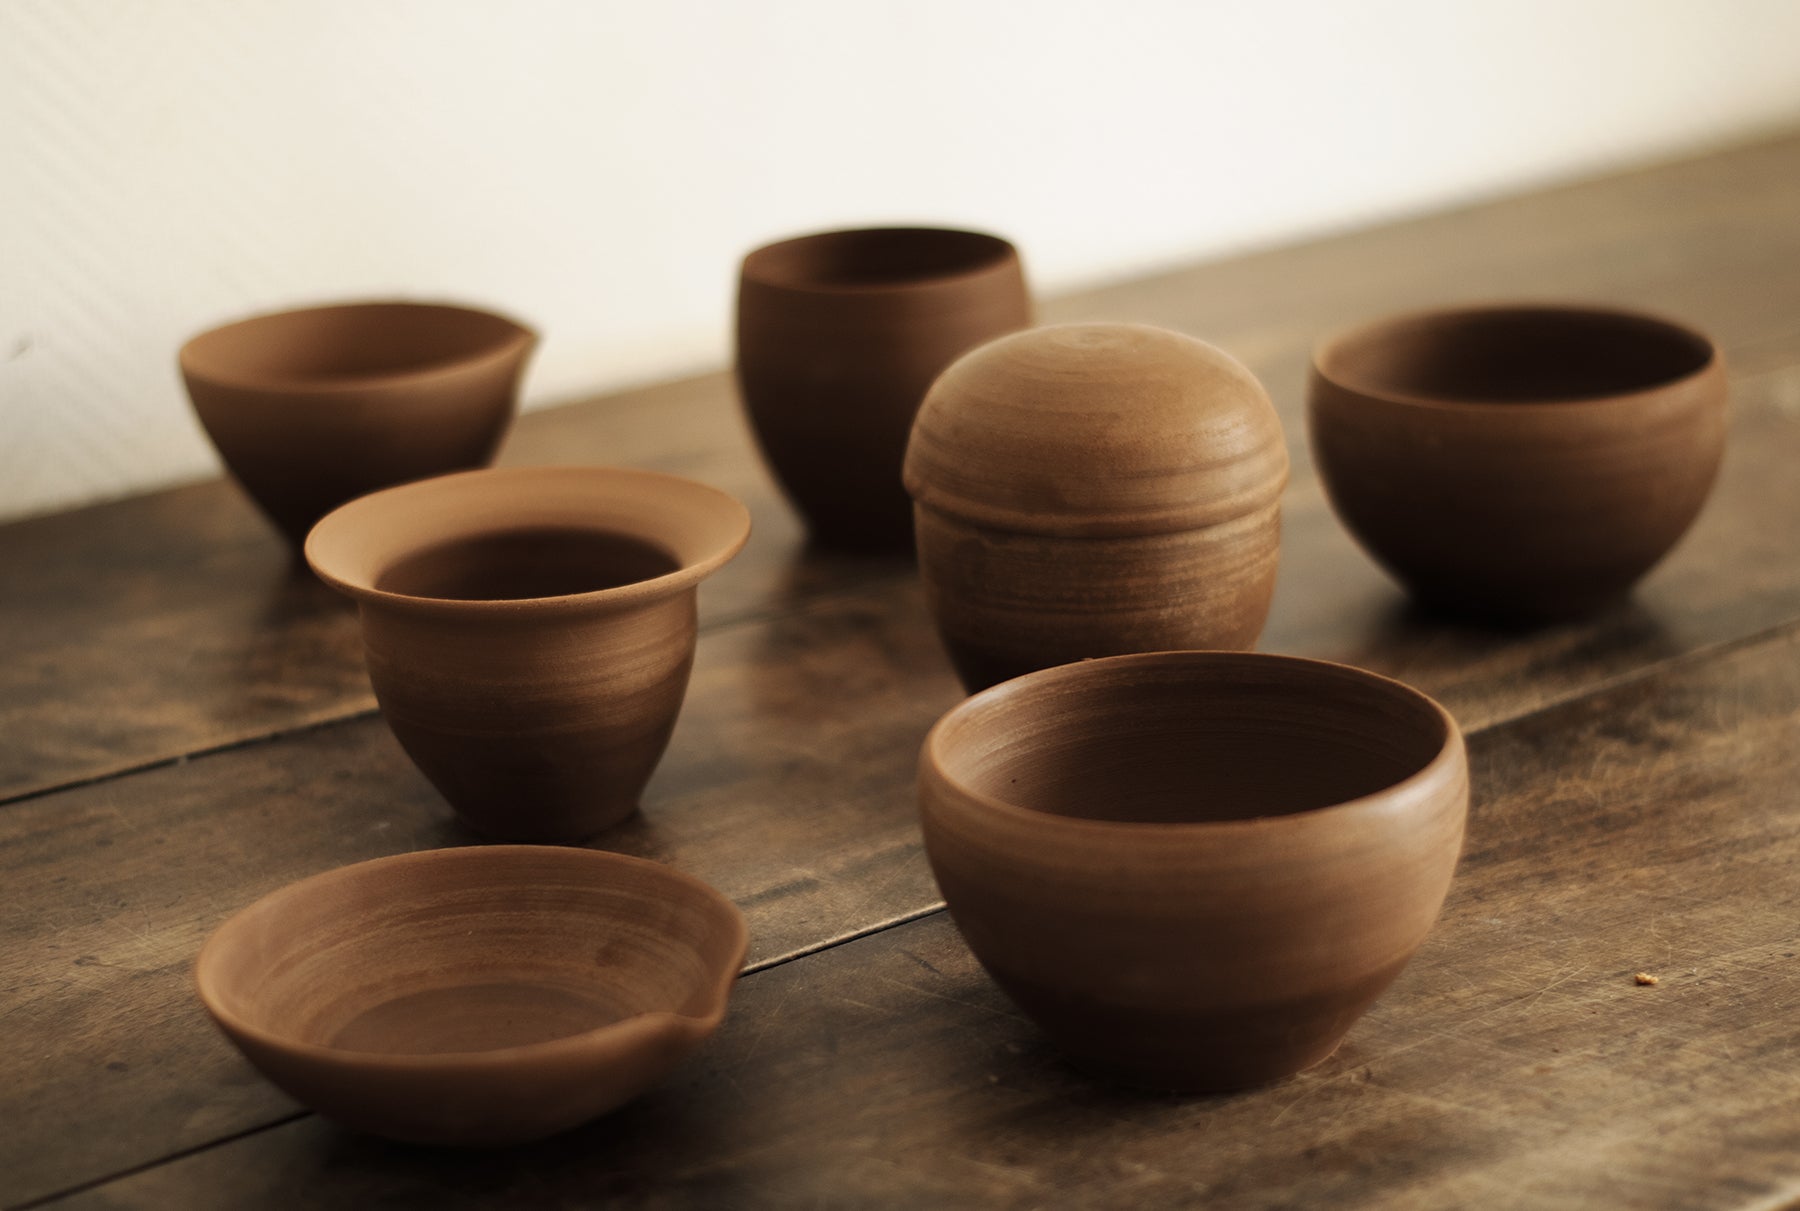 Ini Ceramique Wabi Sabi Ceramic Vase Handmade Design Ceramics Studio Tableware